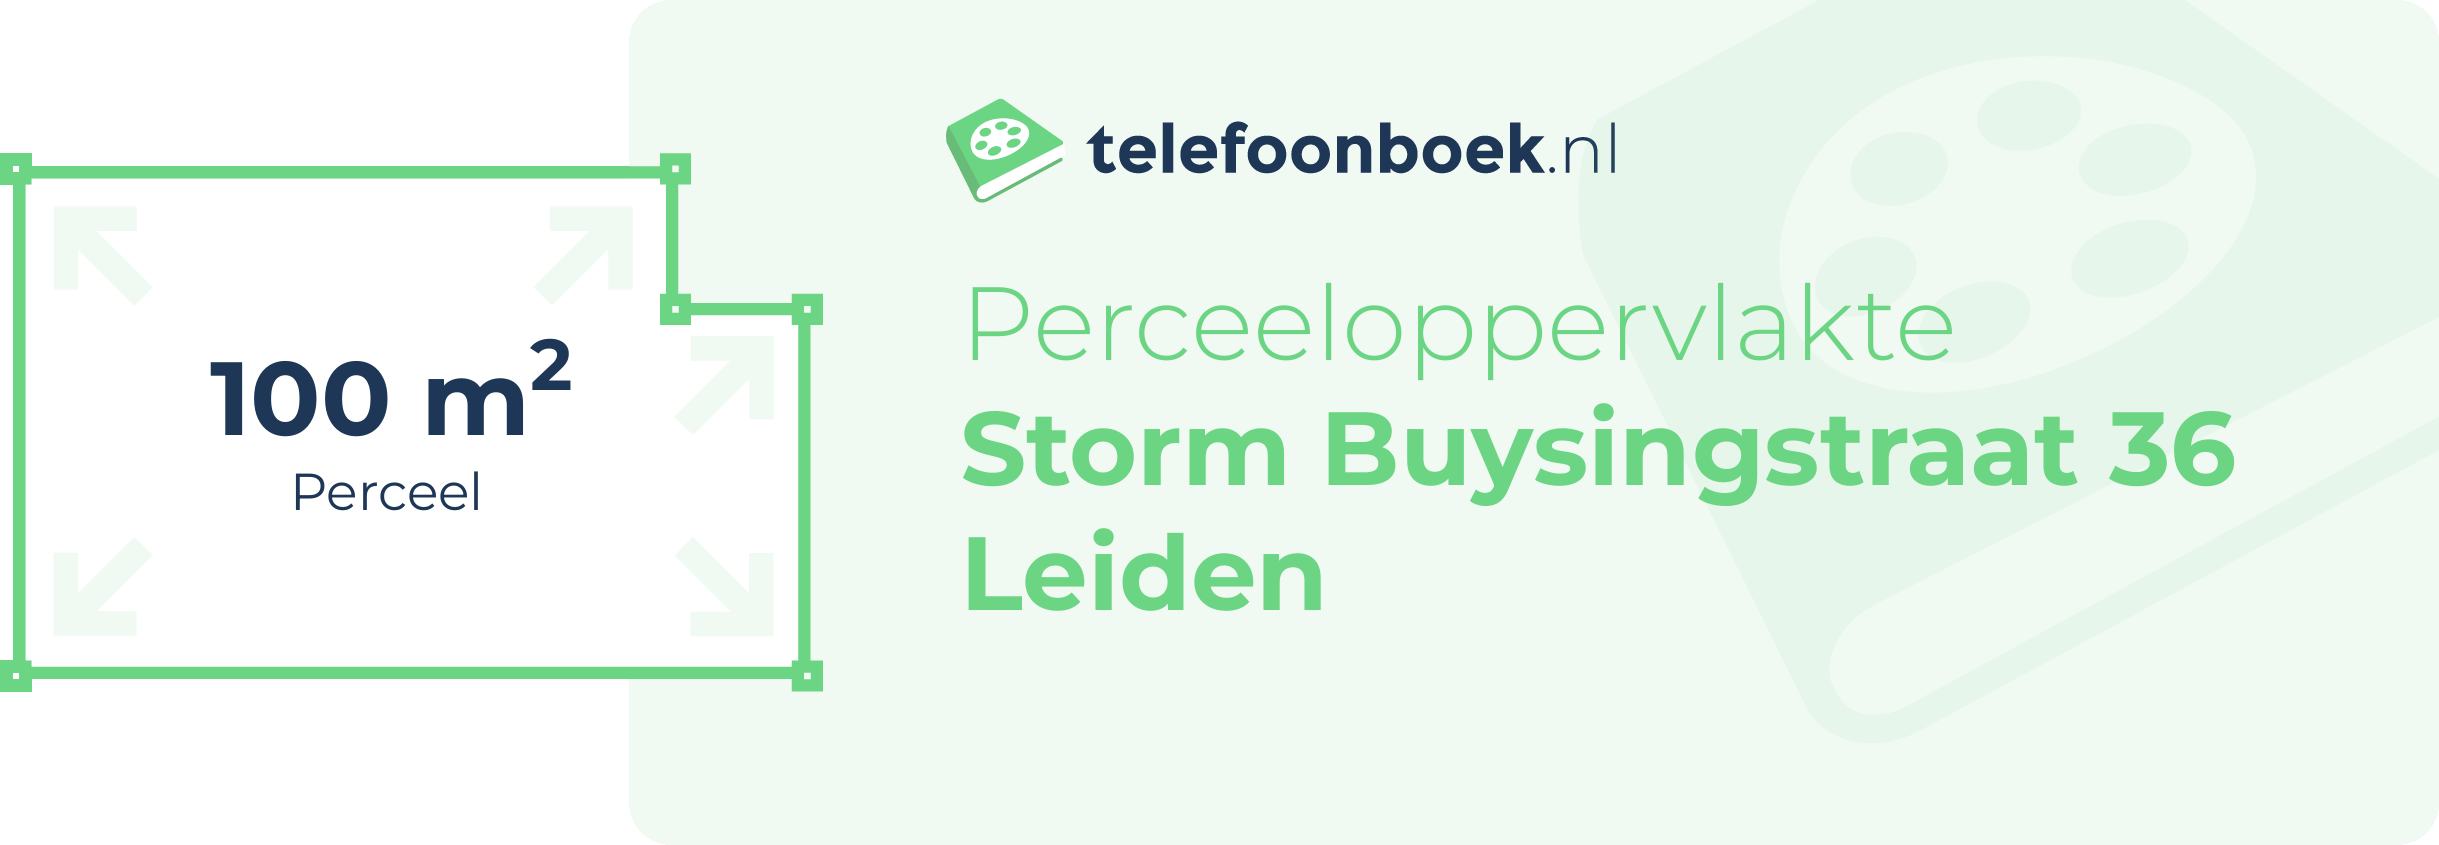 Perceeloppervlakte Storm Buysingstraat 36 Leiden